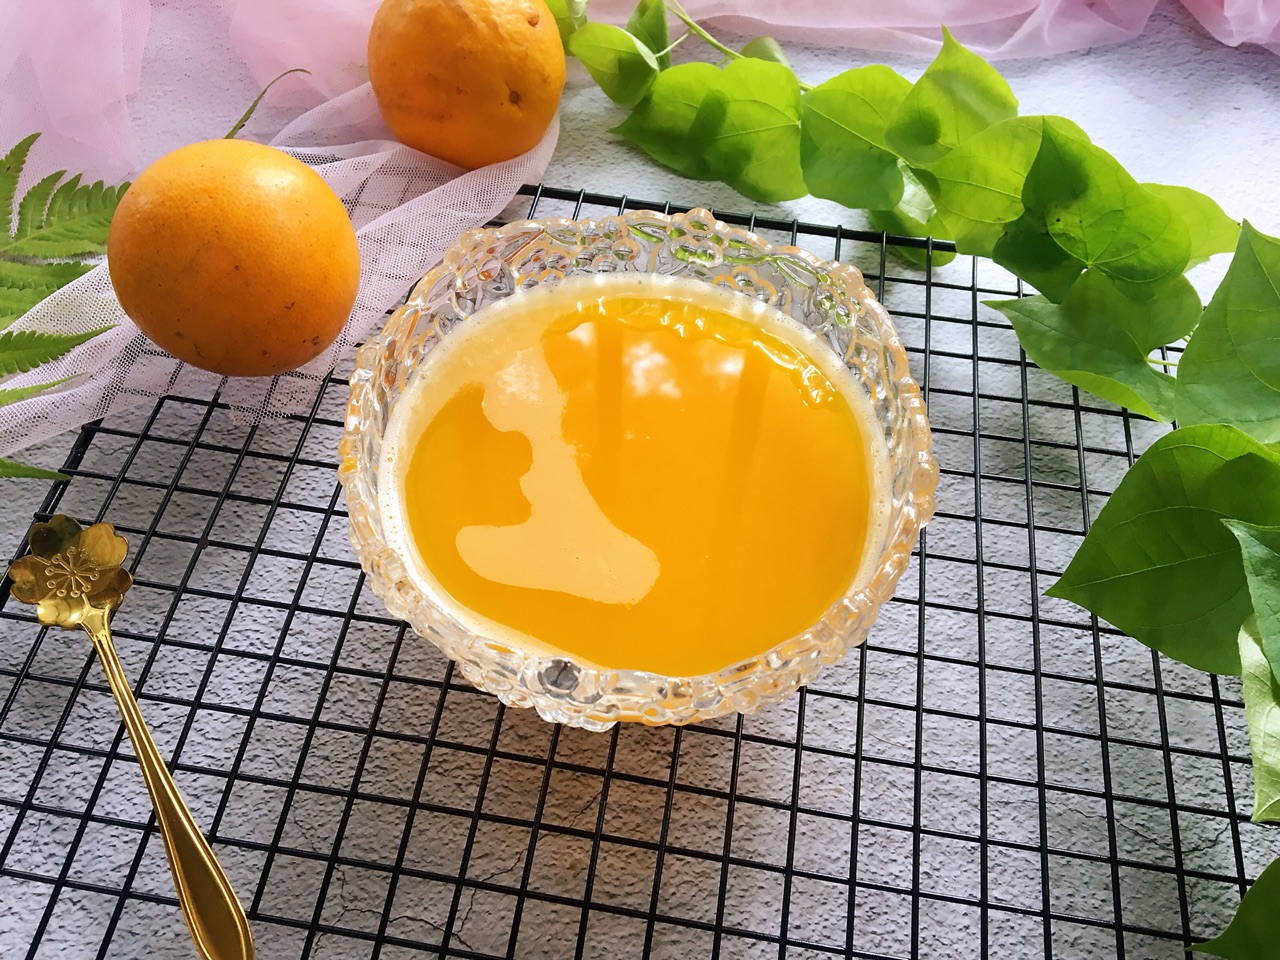 榨好的新鲜橙汁